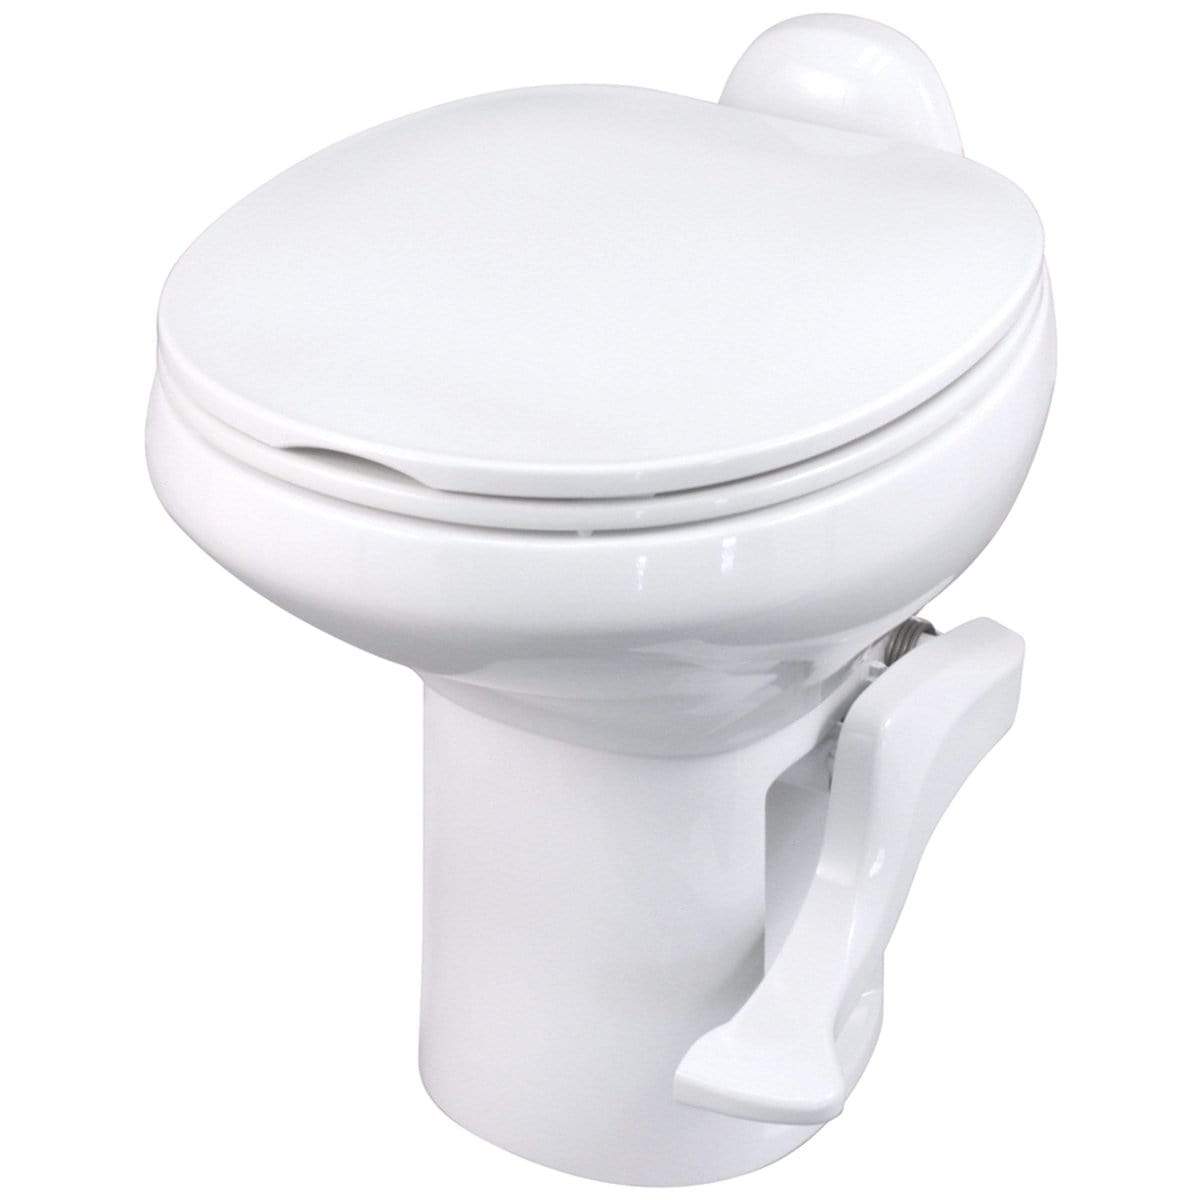 Thetford Not Qualified for Free Shipping Thetford Aqua-Magic Style II Toilet White #42060